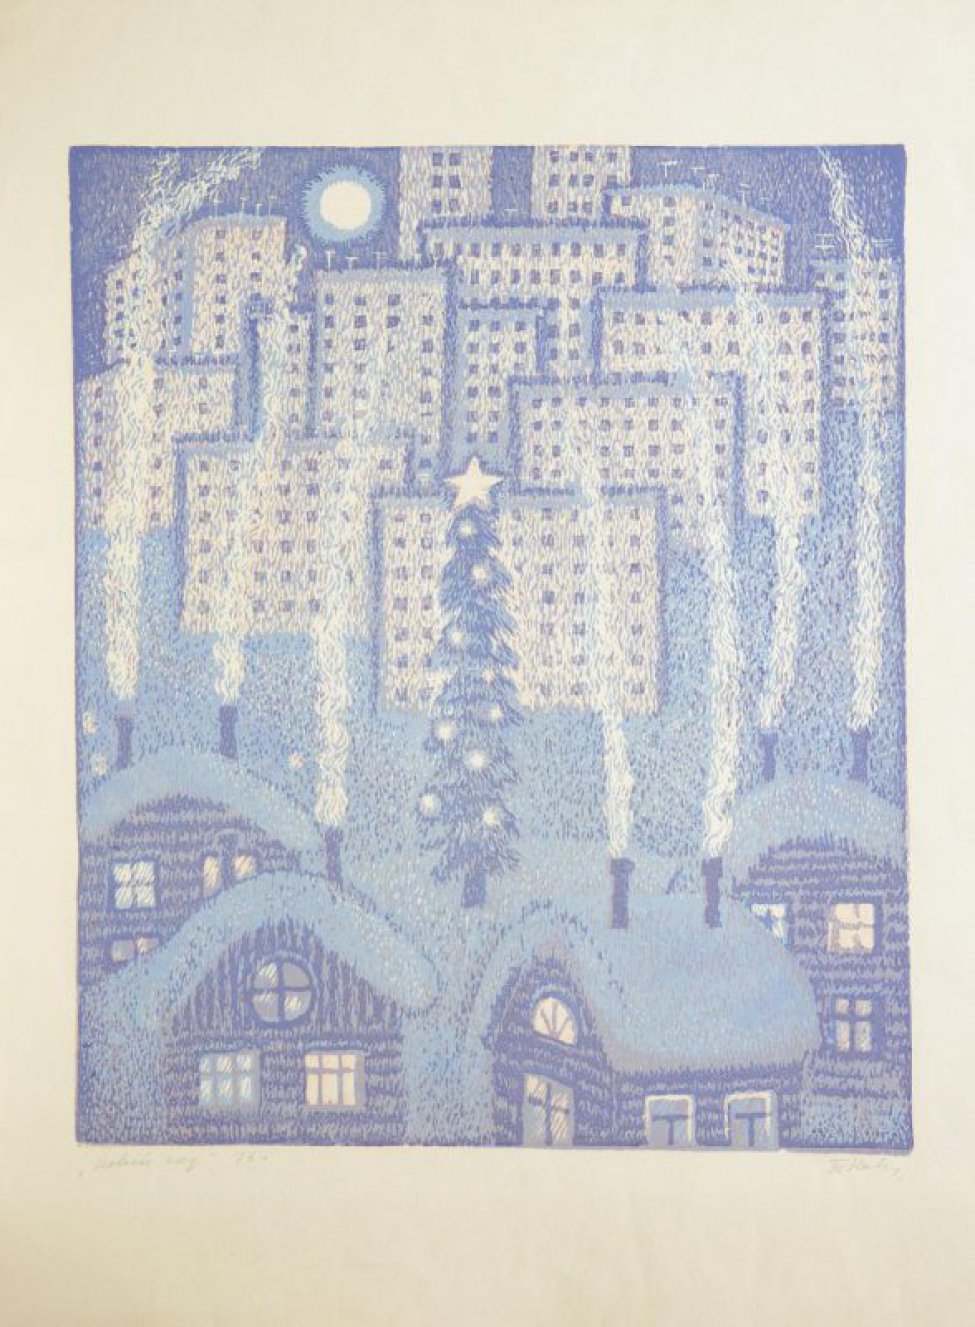 Изображен зимний вечерний городской пейзаж. Вид сверху. На переднем плане- четыре бревенчатых дома с дымящими трубами. На втором плане, в центре композиции-, новогодняя елка.